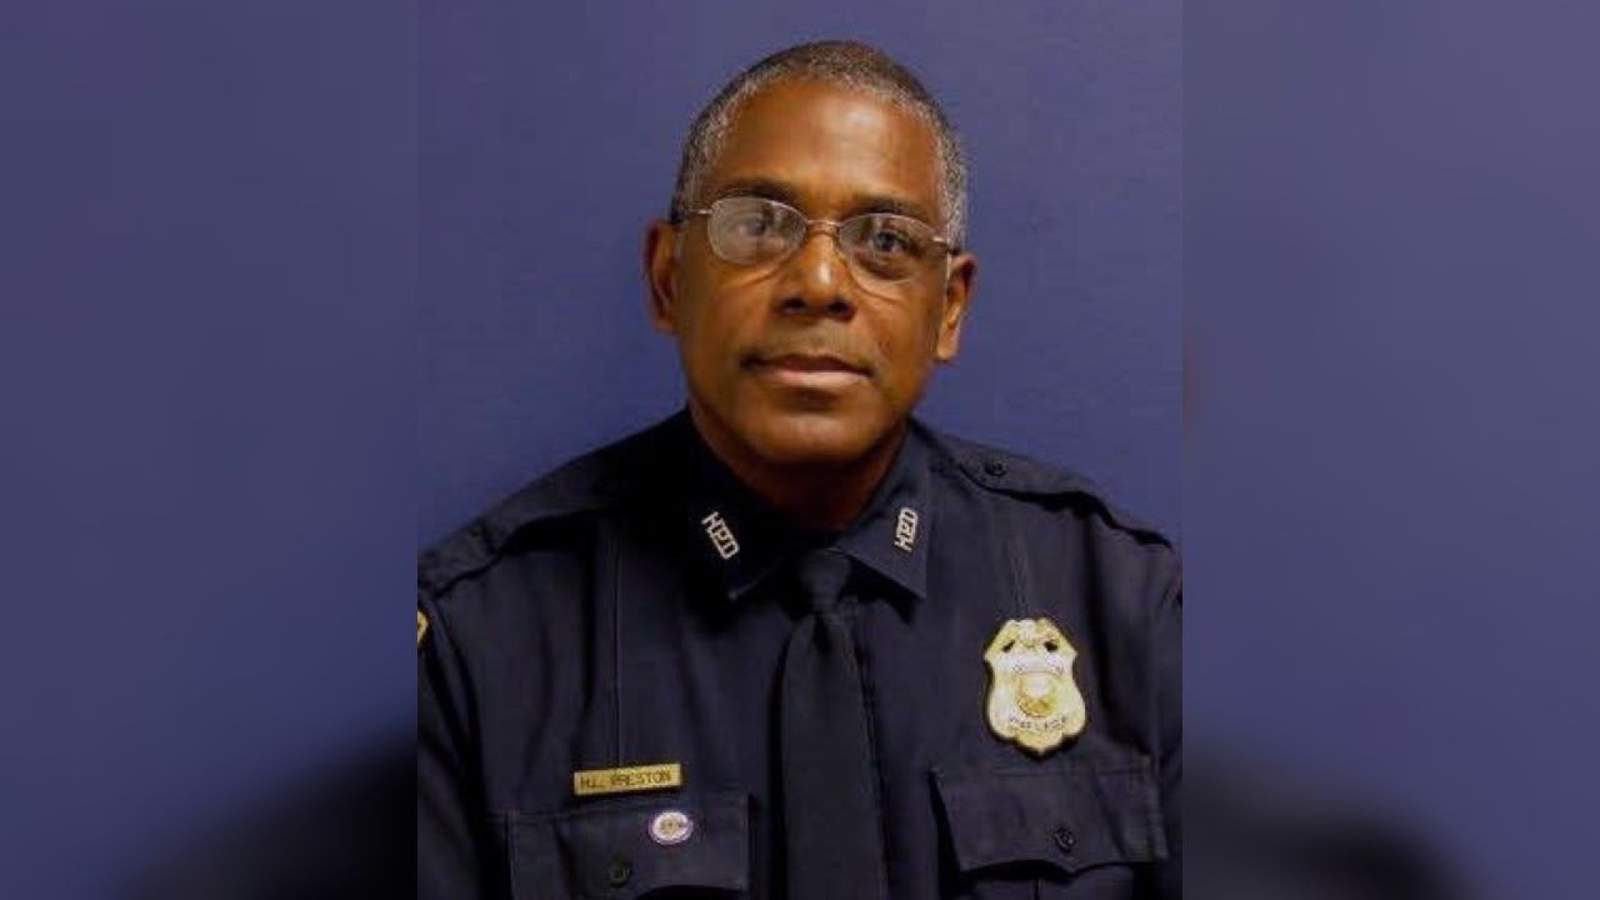 41-year veteran HPD Officer Sgt. Harold Preston dies in shooting near NRG, officials say